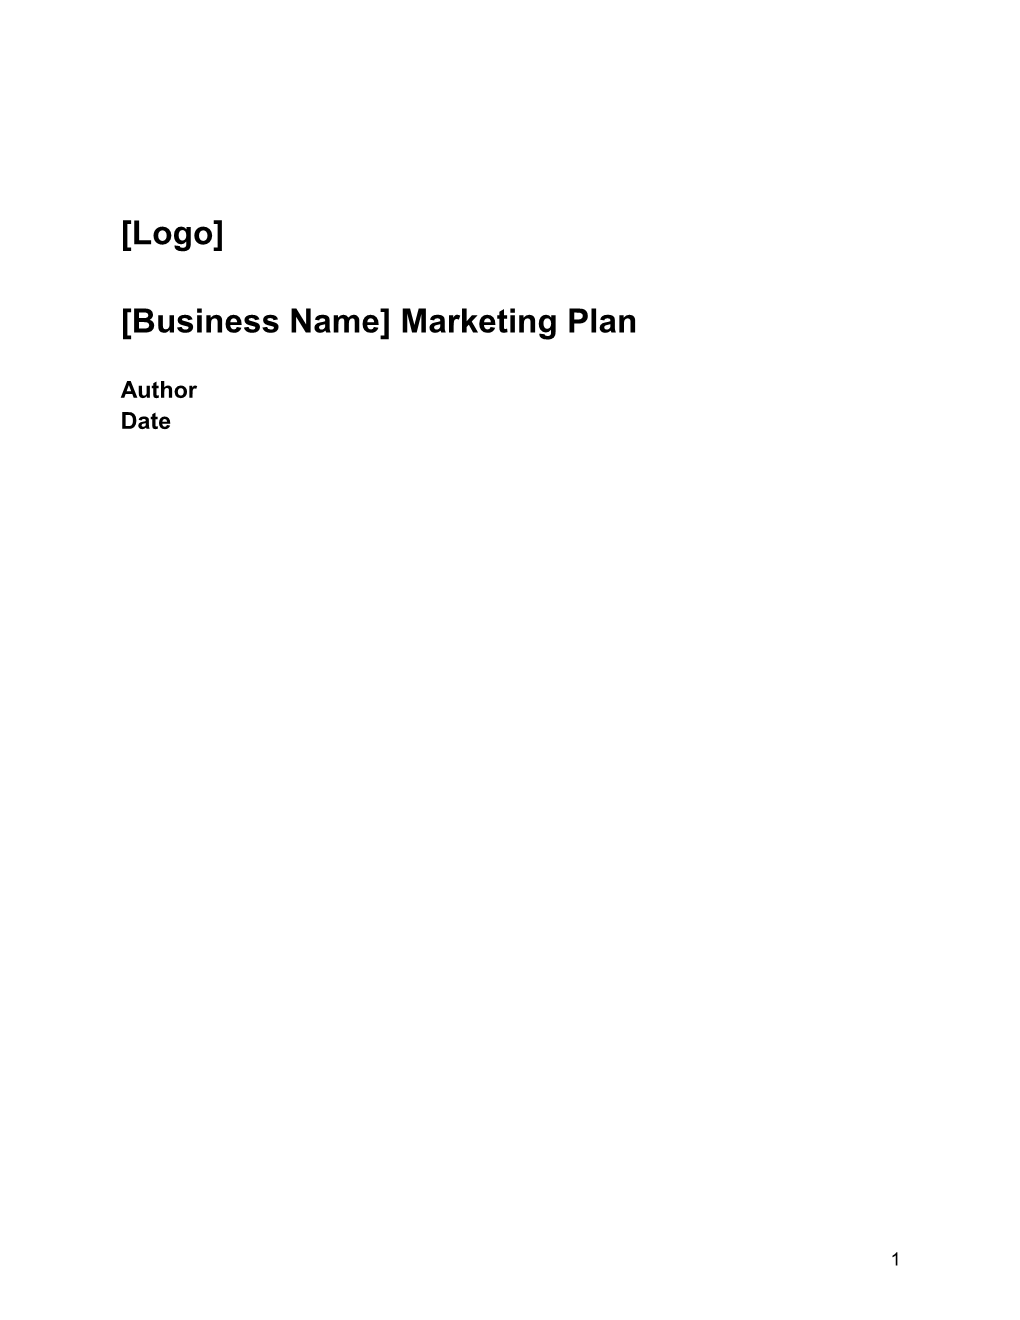 [Logo] [Business Name] Marketing Plan